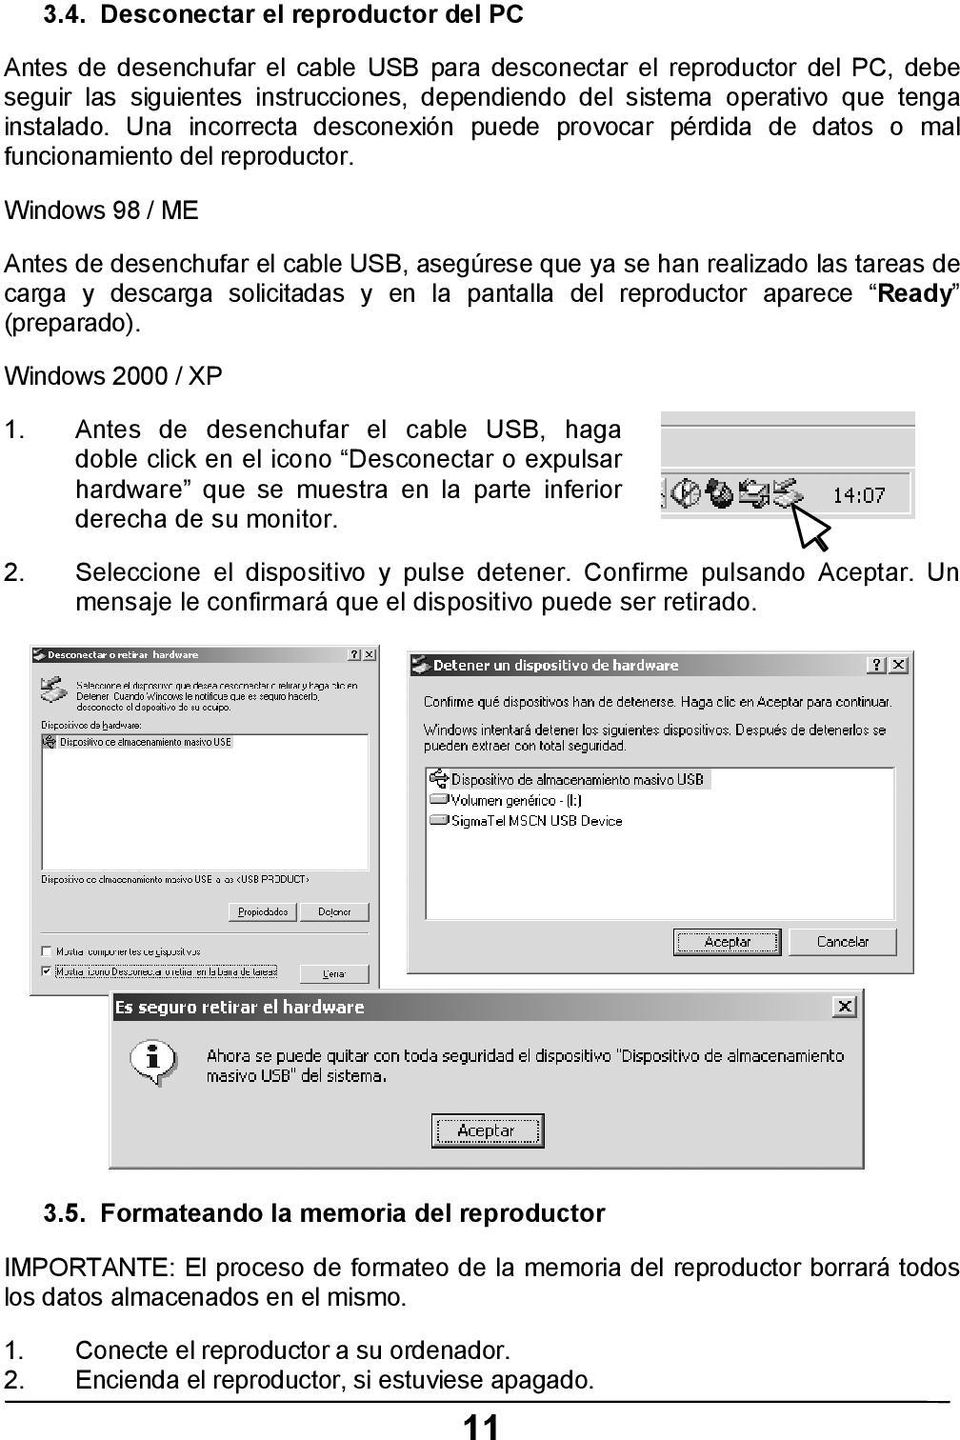 Windows 98 / ME Antes de desenchufar el cable USB, asegúrese que ya se han realizado las tareas de carga y descarga solicitadas y en la pantalla del reproductor aparece Ready (preparado).